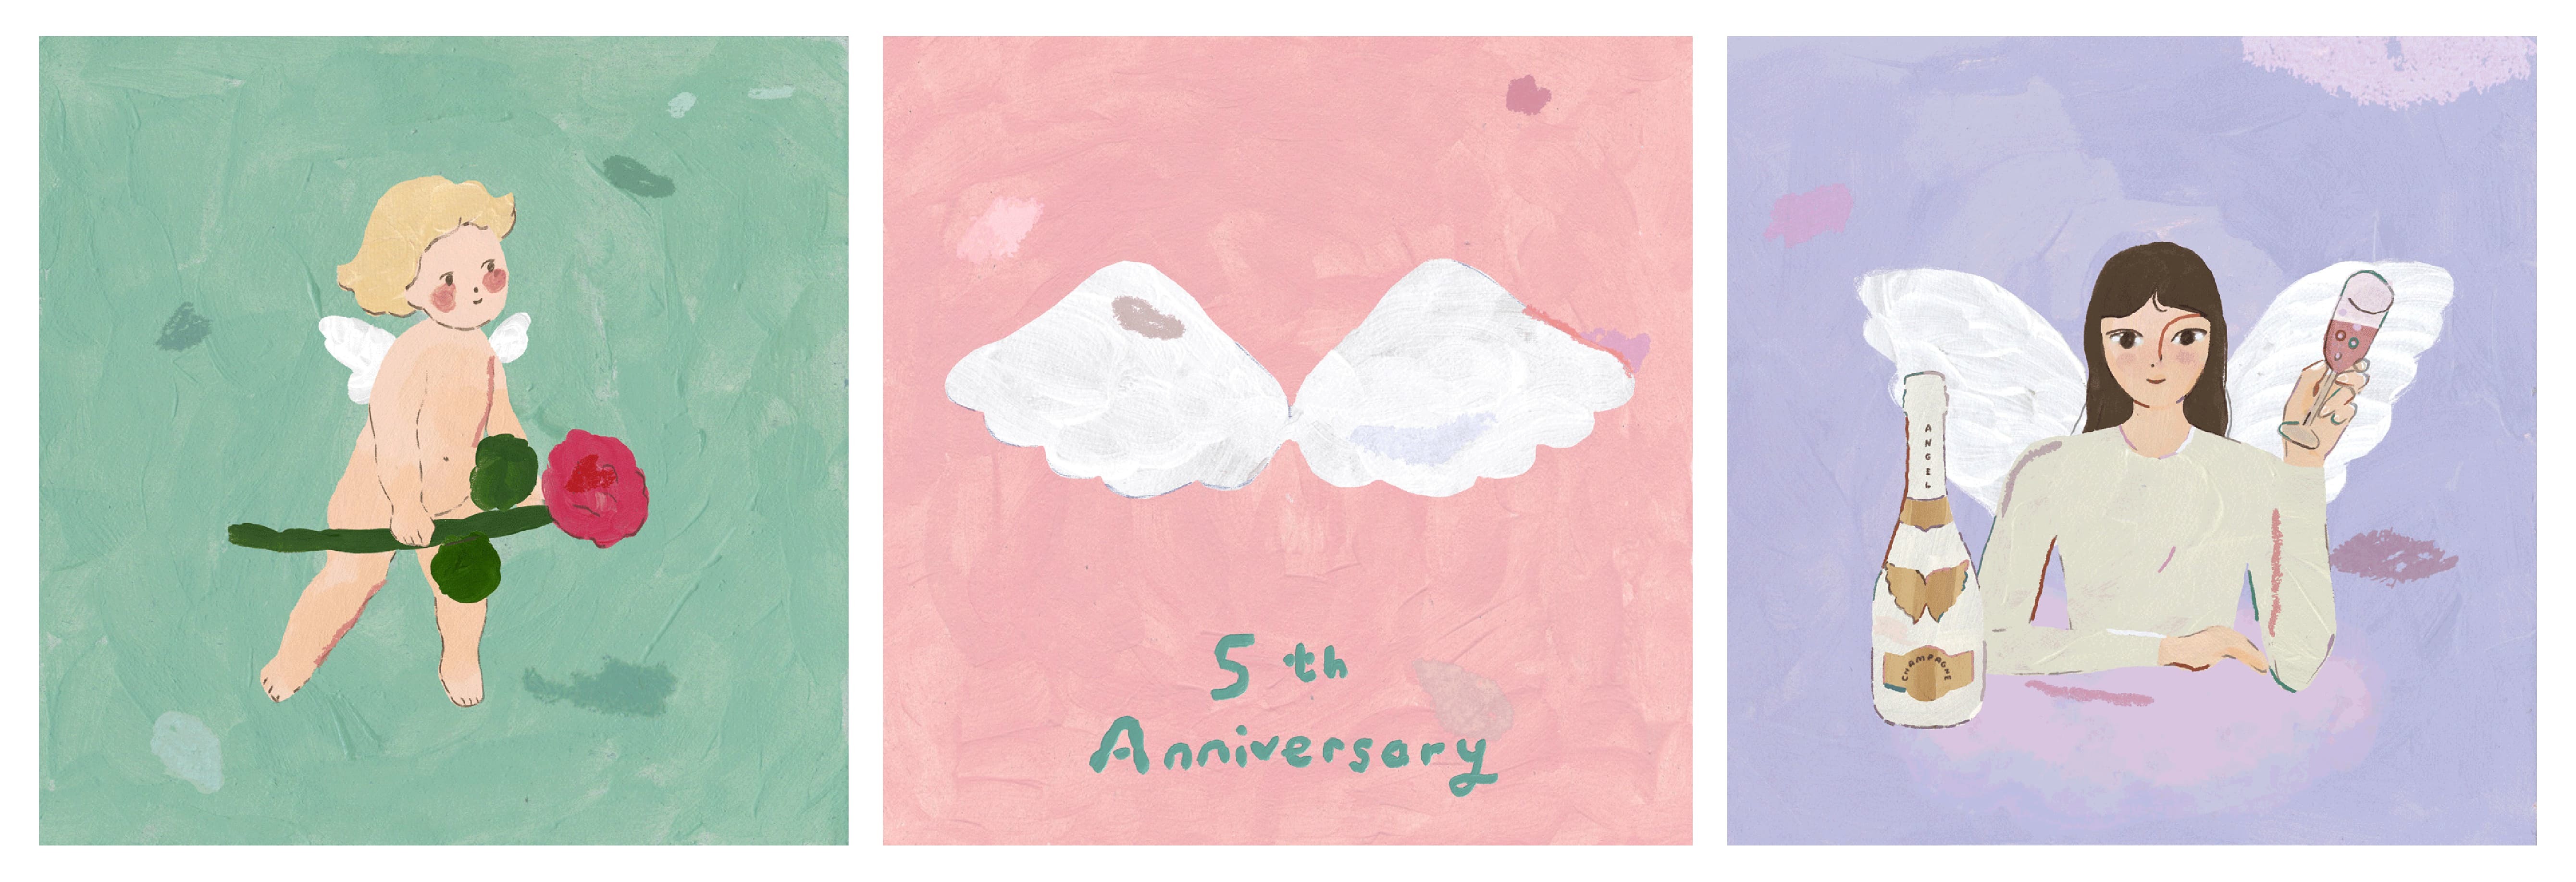 ラグジュアリーシャンパン“ANGEL CHAMPAGNE”が日本上陸
5周年を記念してシャーロット・メイとのコラボレーションを発表！